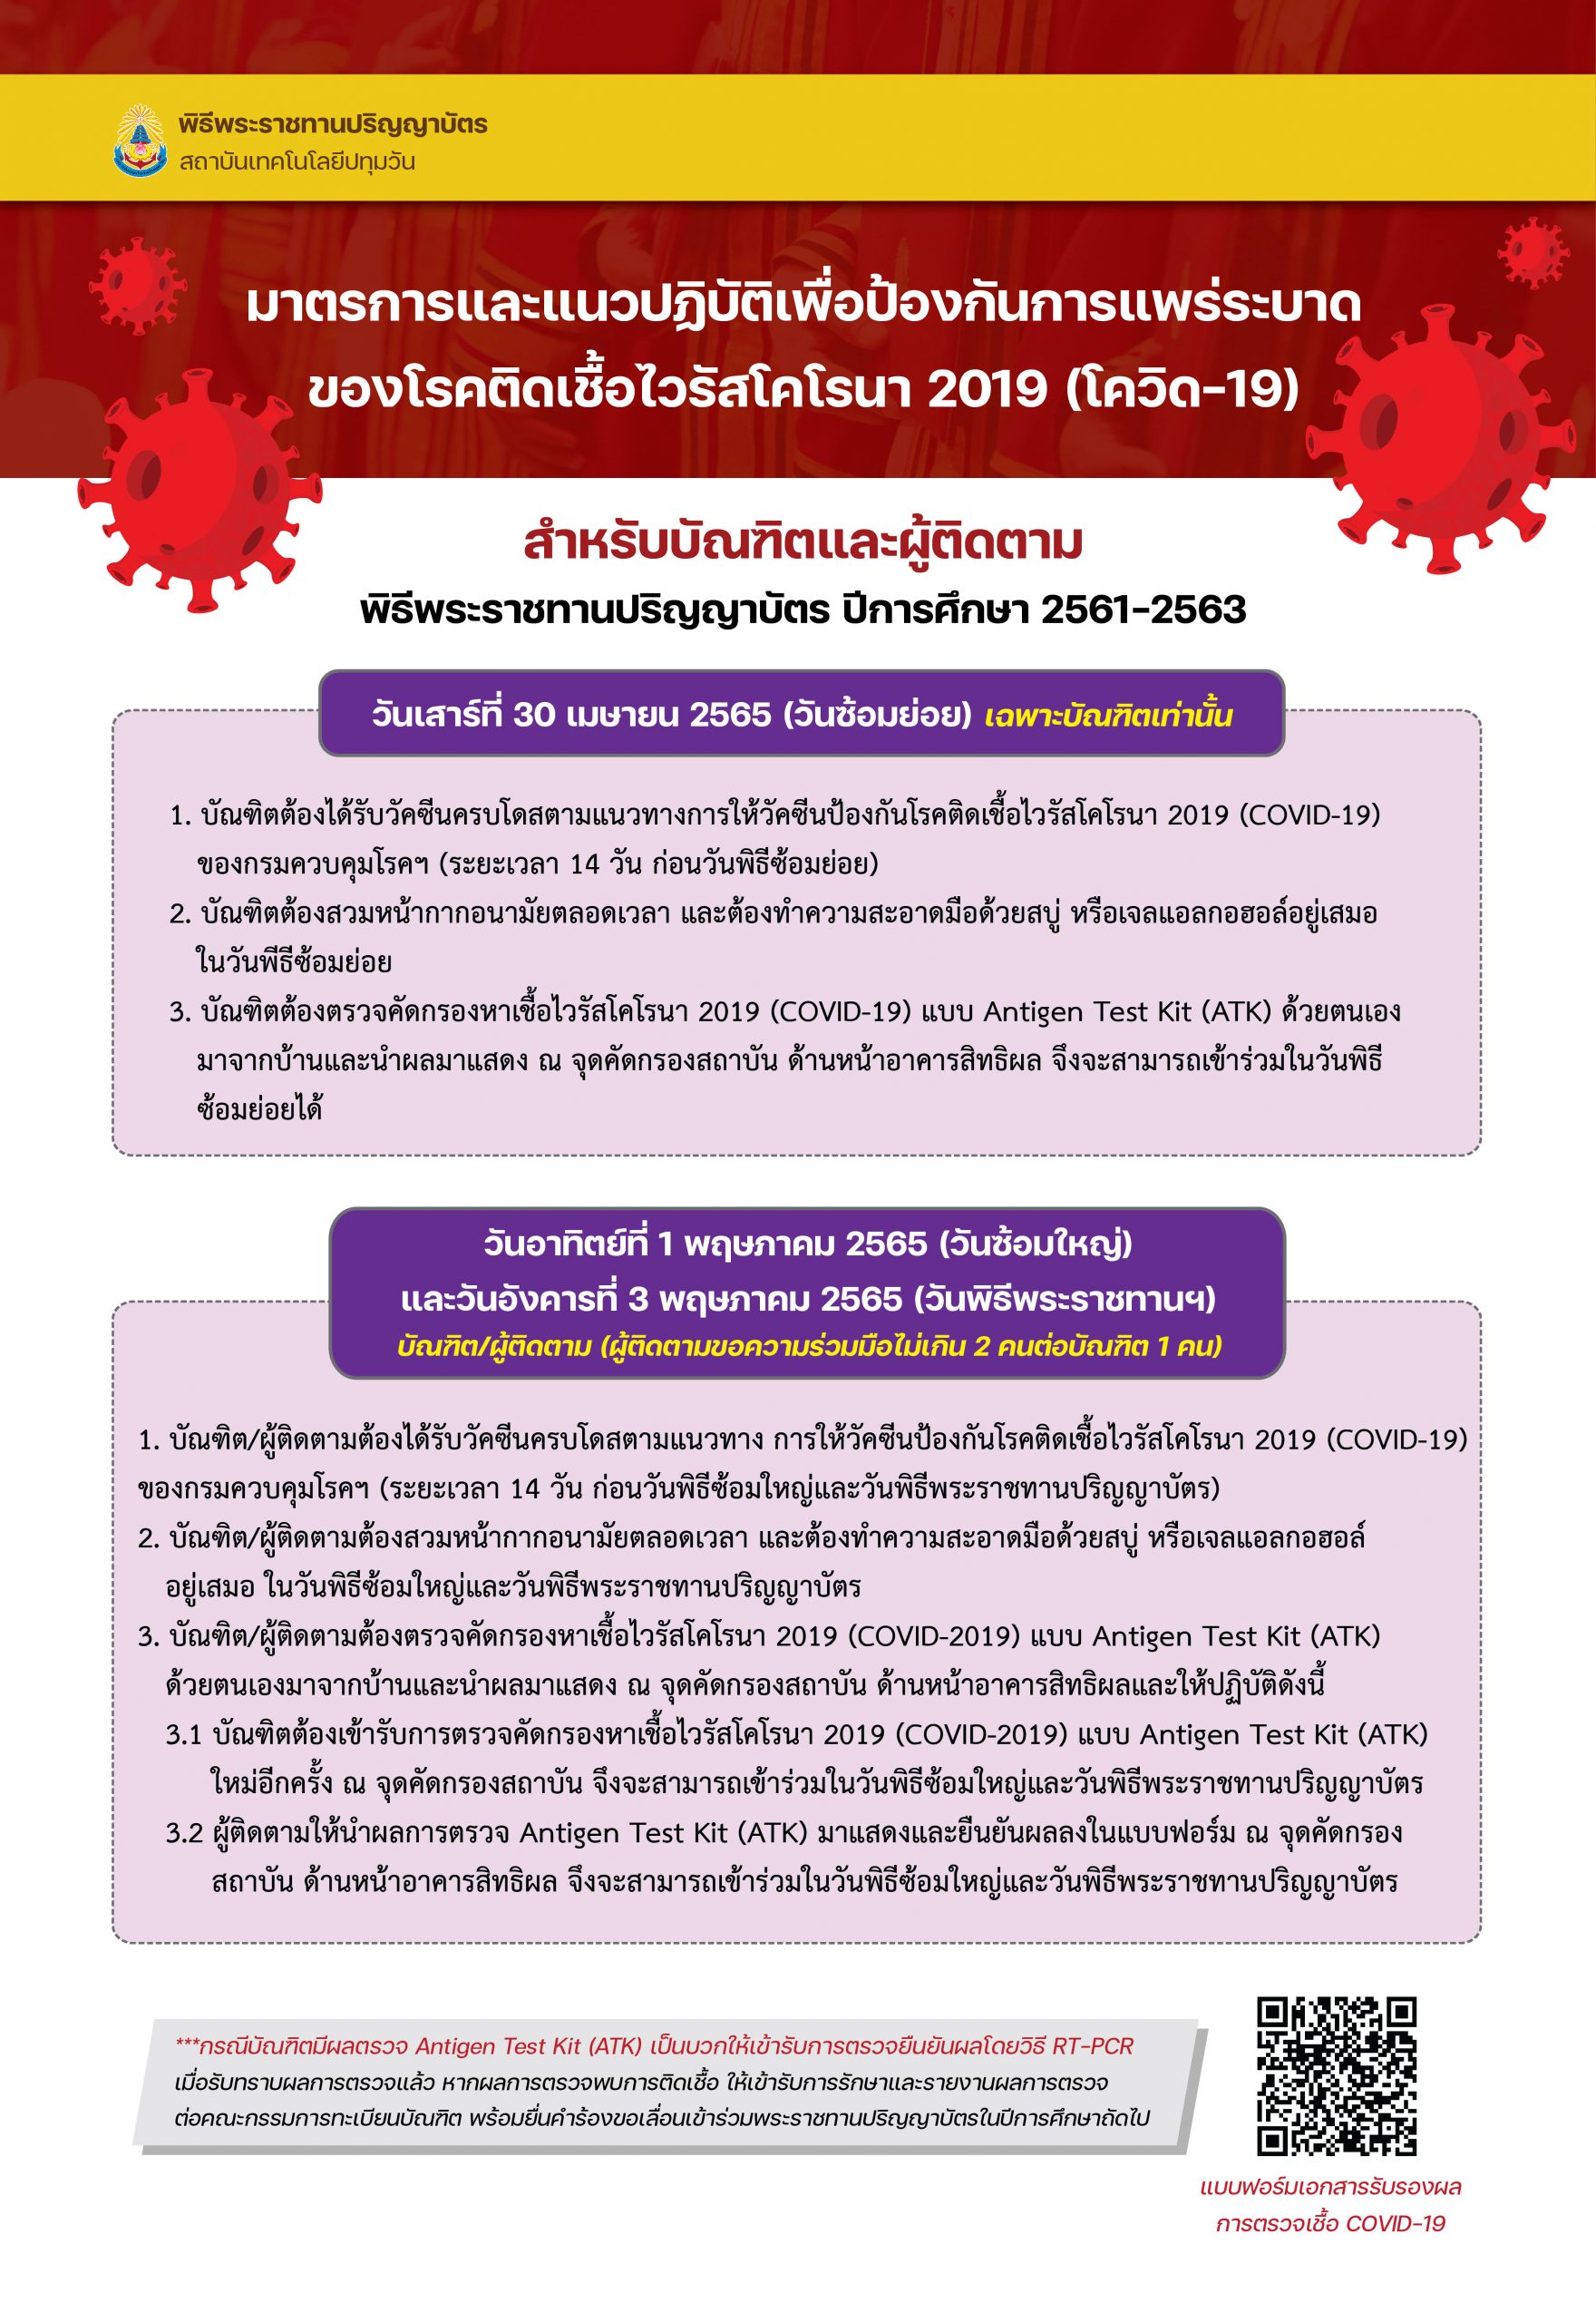 พิธีพระราชทานปริญญาบัตรแก่ผู้สำเร็จการศึกษา ปีการศึกษา 2561-2563